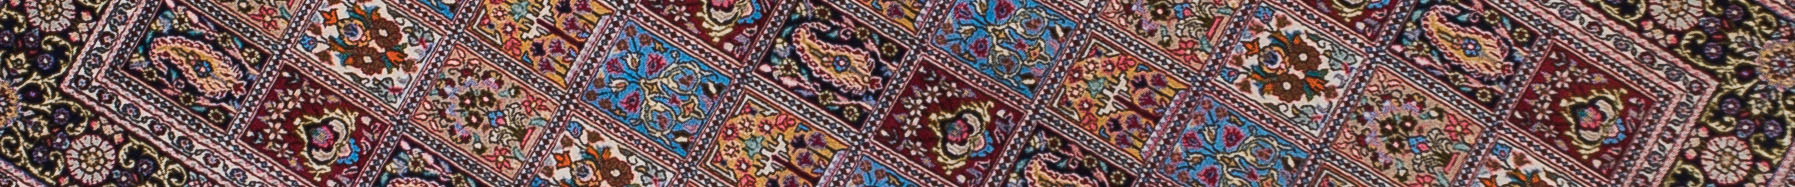 Qom Persian Carpet Rug N1Carpet Canada Montreal Tapis Persan 2250